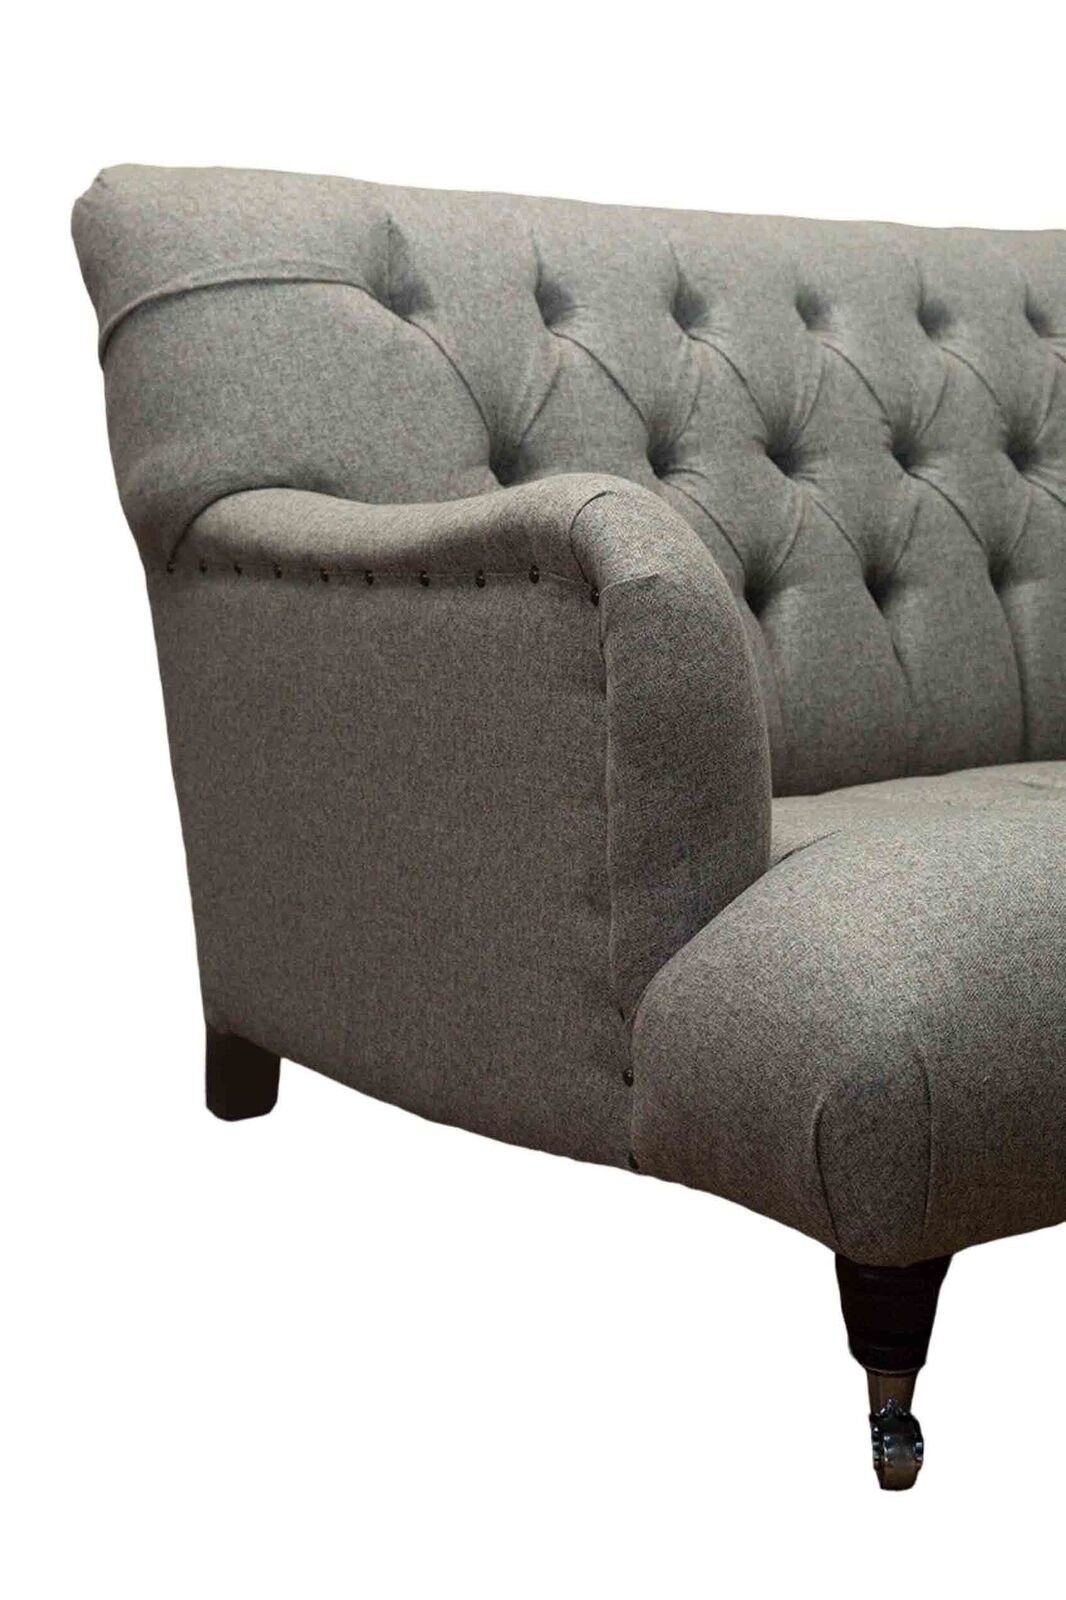 Luxus Chesterfield Couchen, Sofa Blau Design Dreisitzer Made JVmoebel Sofa Europe Möbel Sitzer In 3